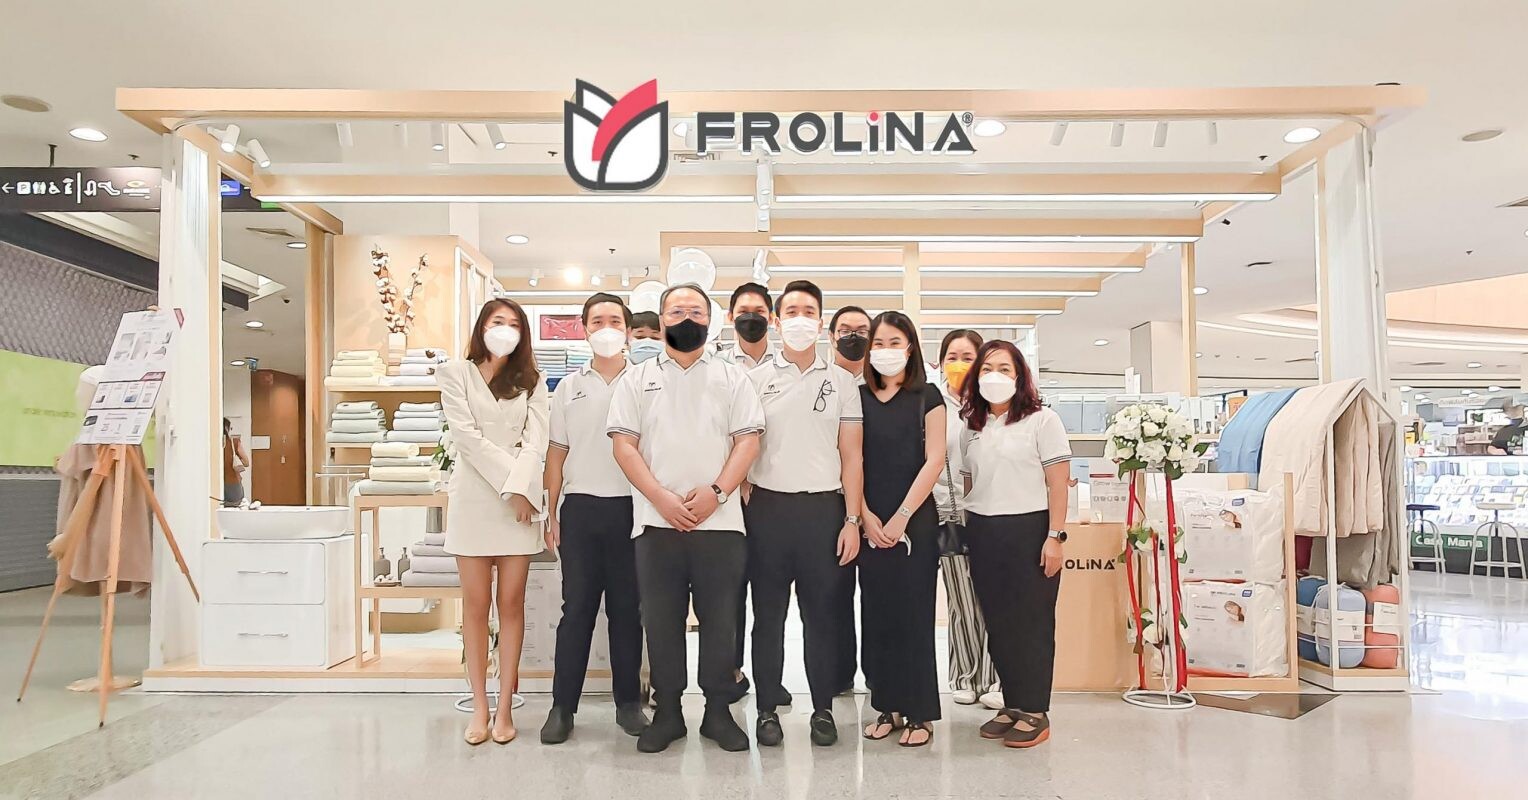 "ฟรอลิน่า" เปิดตัว Frolina Shop แห่งแรกอย่างเป็นทางการ ณ ศูนย์การค้าพาราไดซ์ พาร์ค ศรีนครินทร์